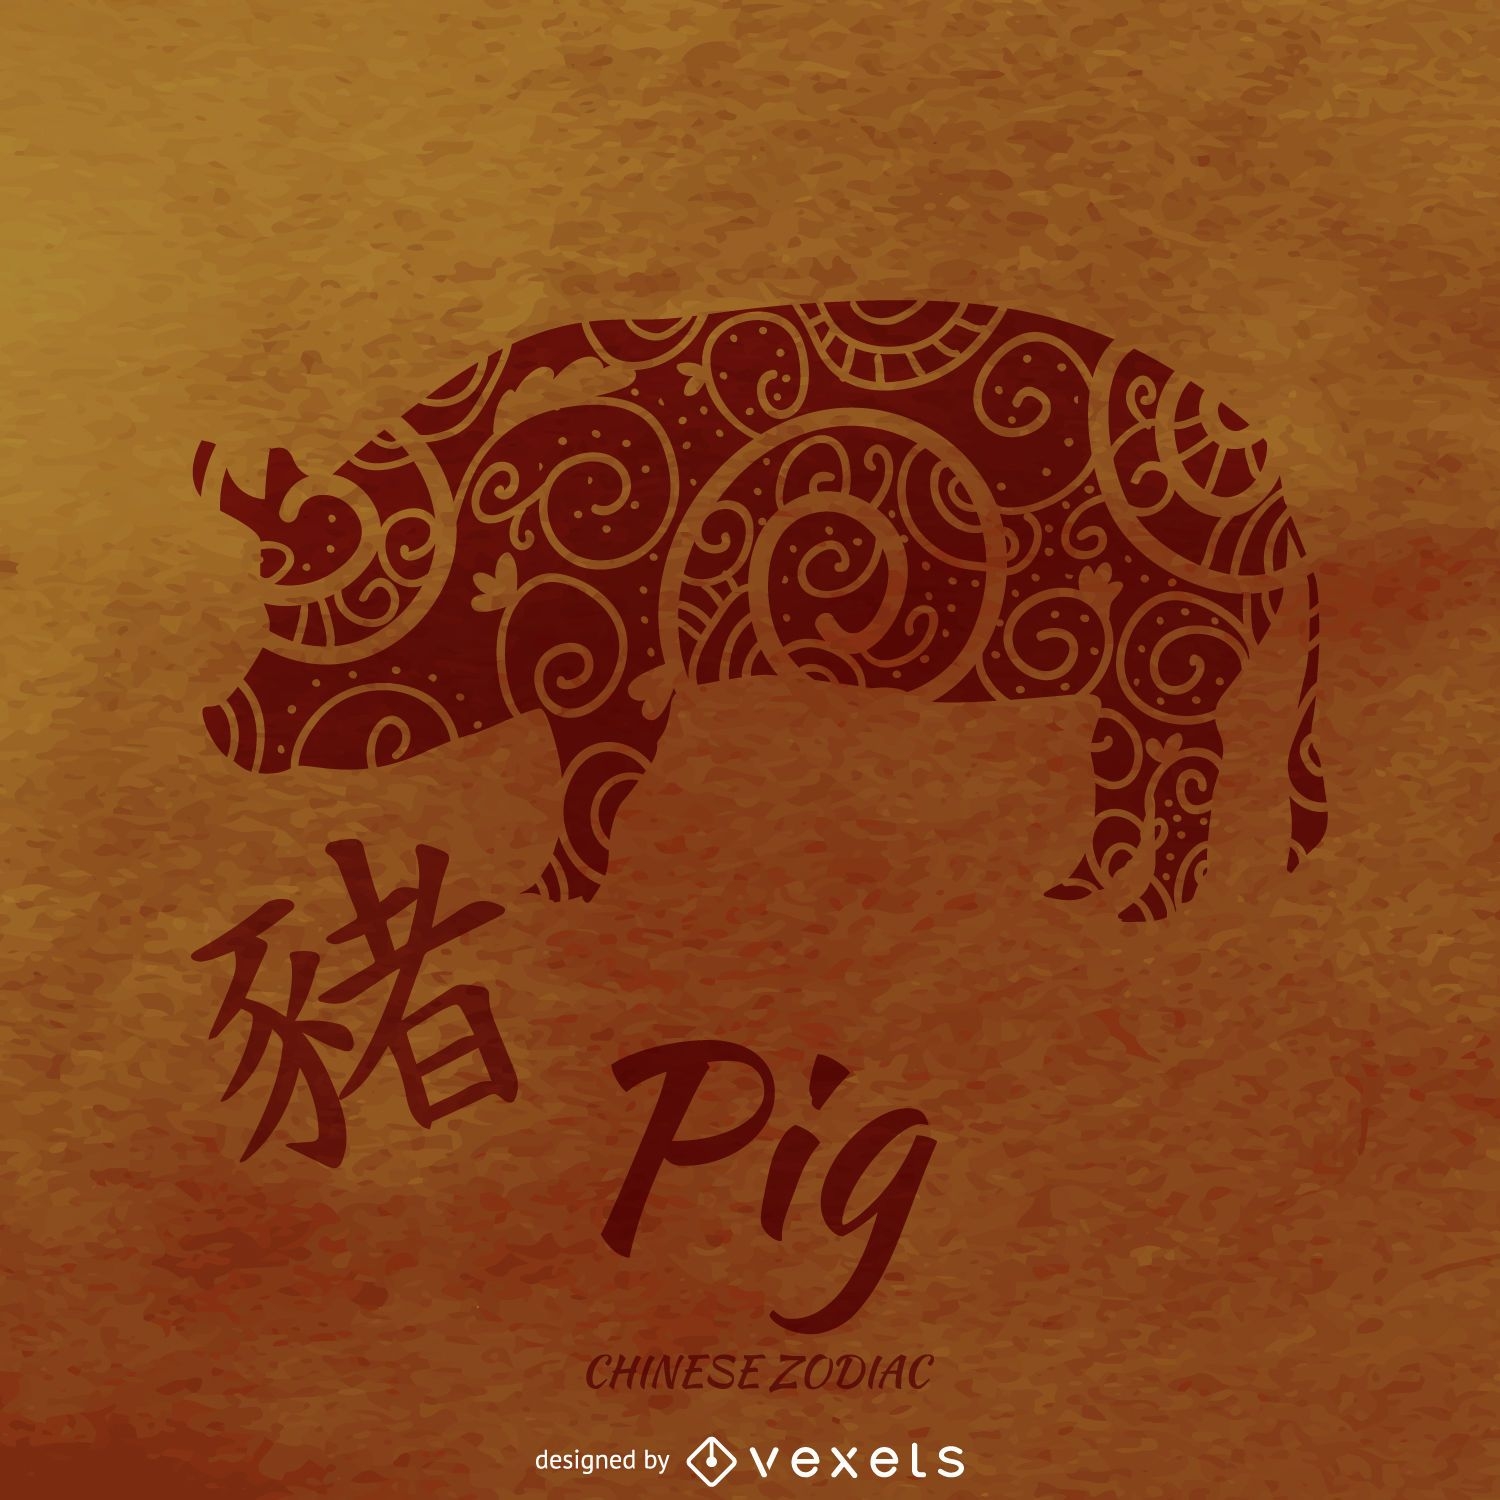 Cerdo ilustrada del zodiaco chino Descargar vector